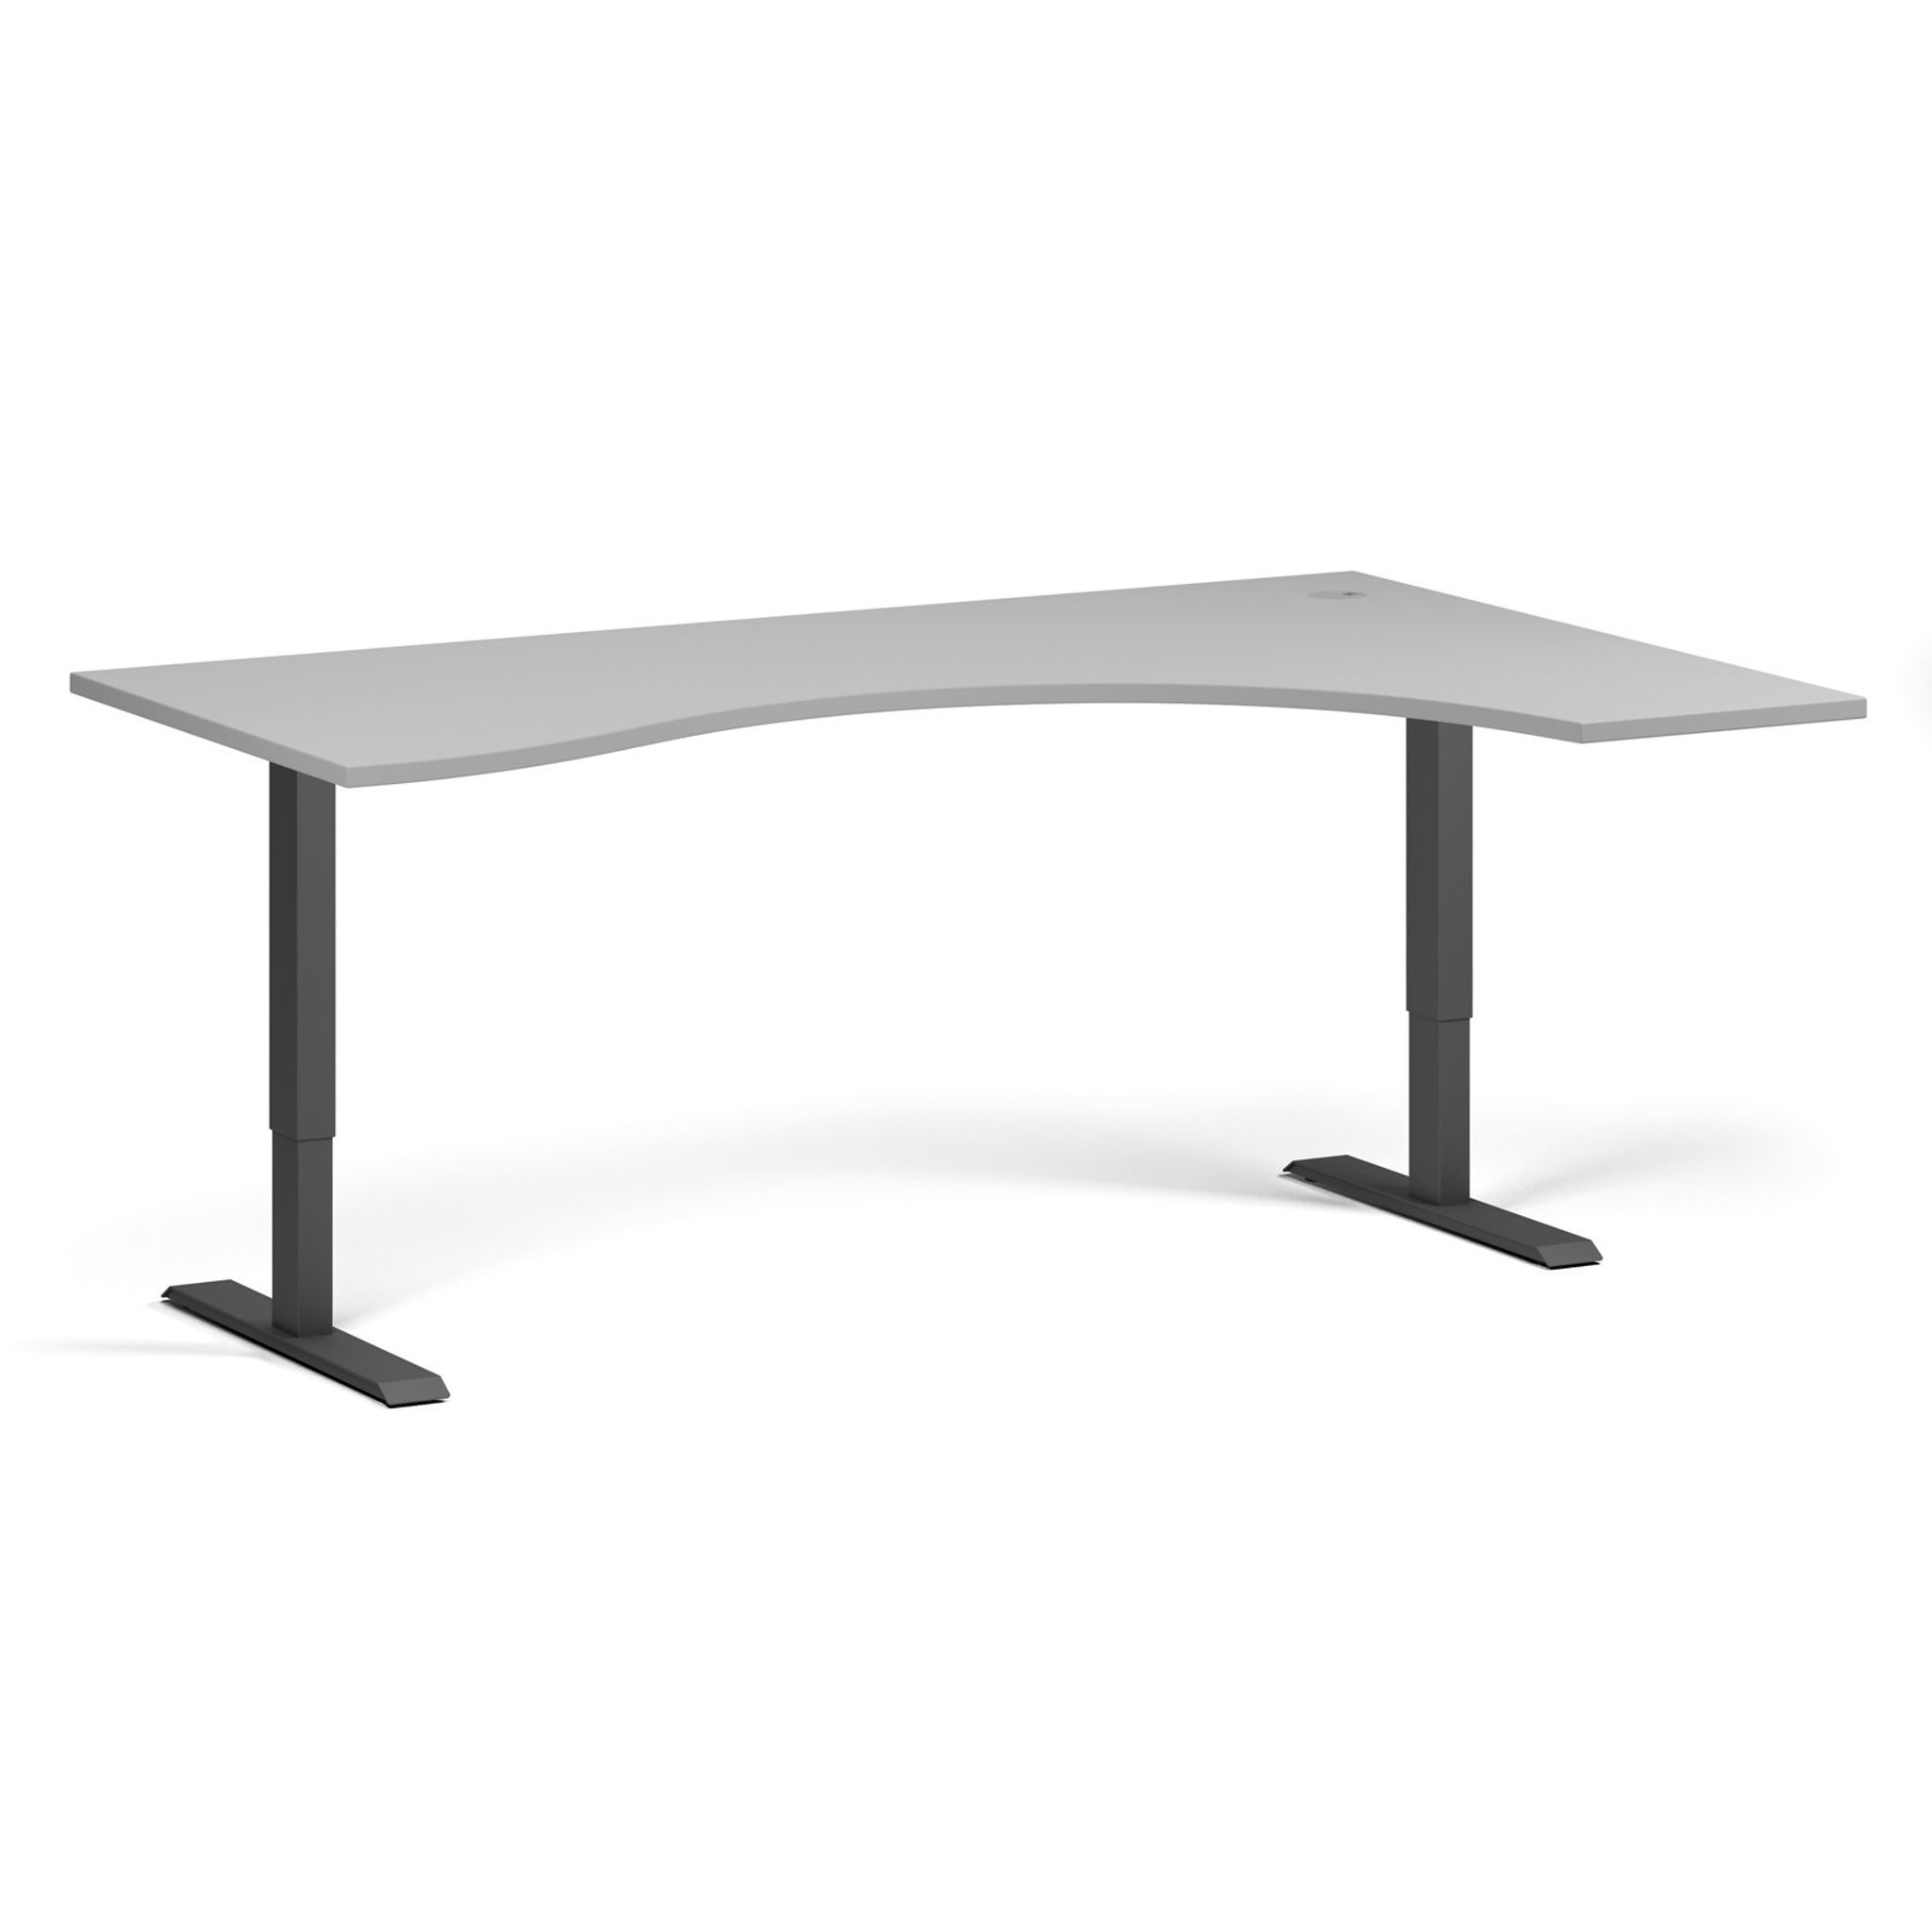 Výškově nastavitelný stůl, 2 motory, 745-1215 mm, ergonomický pravý, deska 1800x1200 mm, černá podnož, šedá